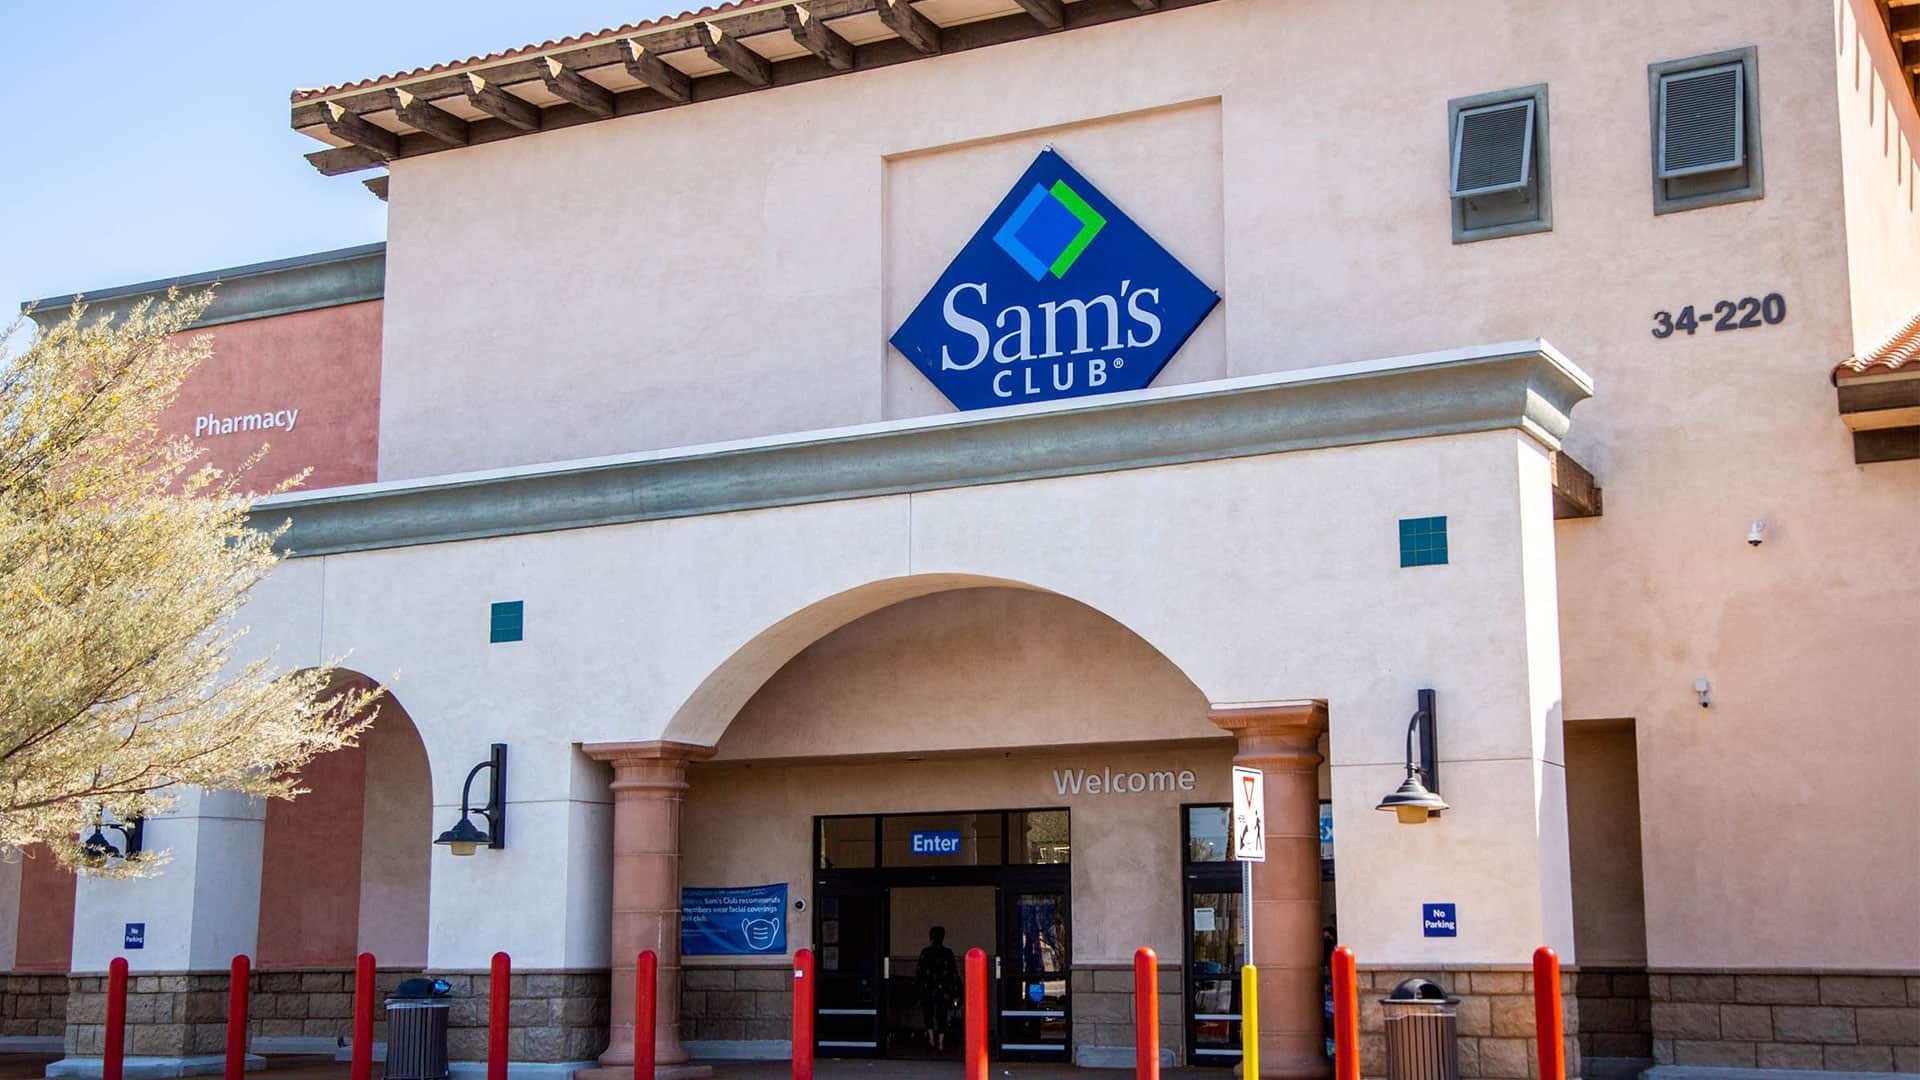 Sam's Club entrance storefront exterior